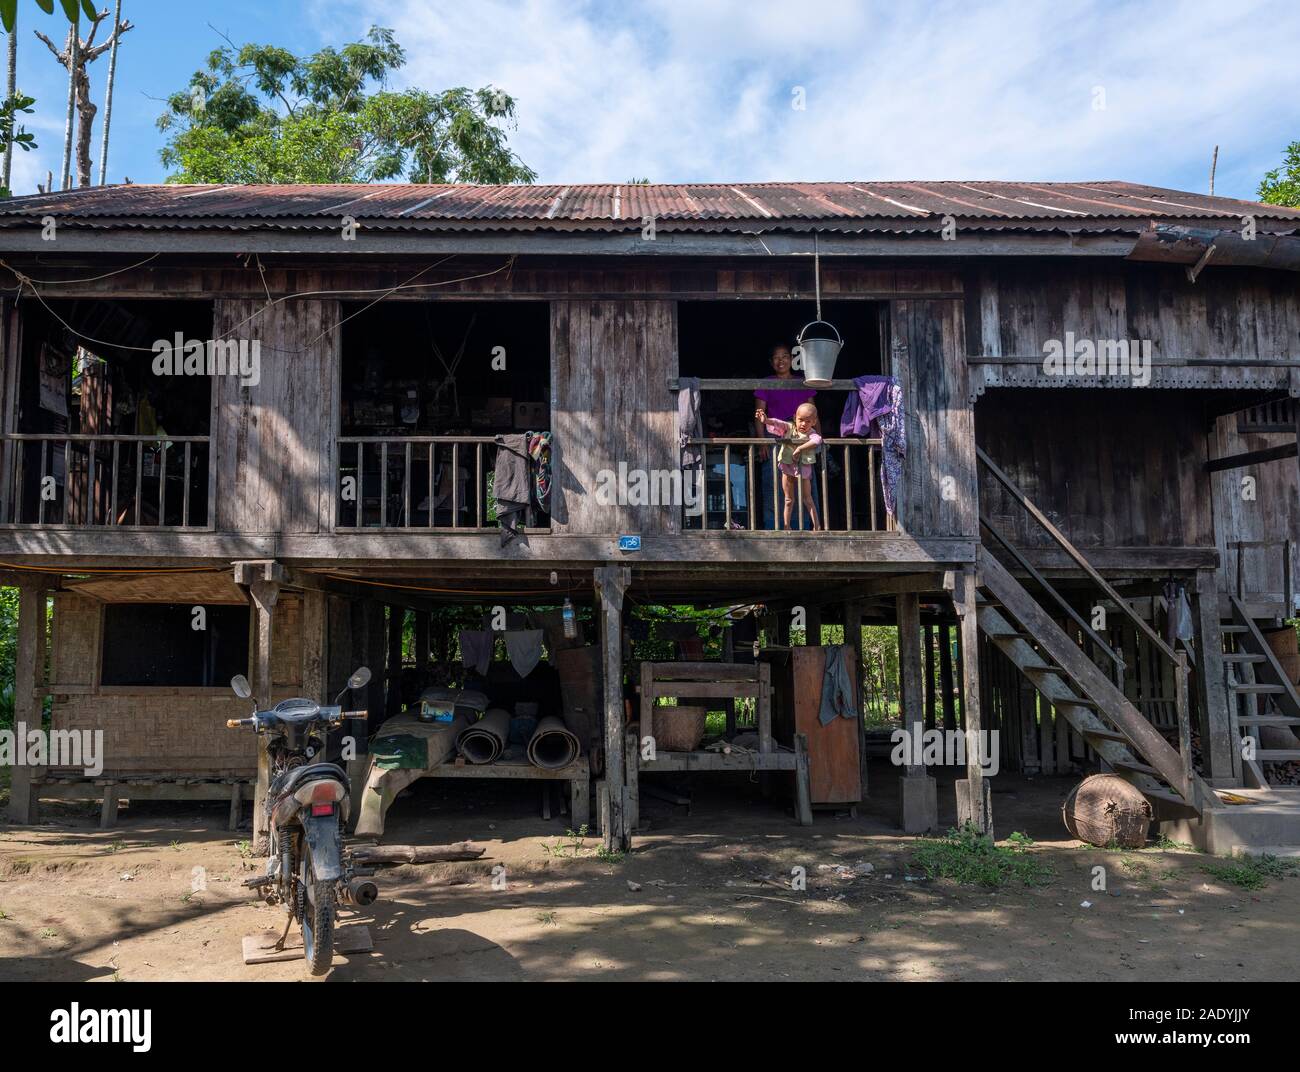 Une birmane traditionnelle maison de village avec toit en tôle, construction en bois, soulevé des pilotis et ouvrir des perspectives de l'air dans le nord-ouest du Myanmar (Birmanie) Banque D'Images